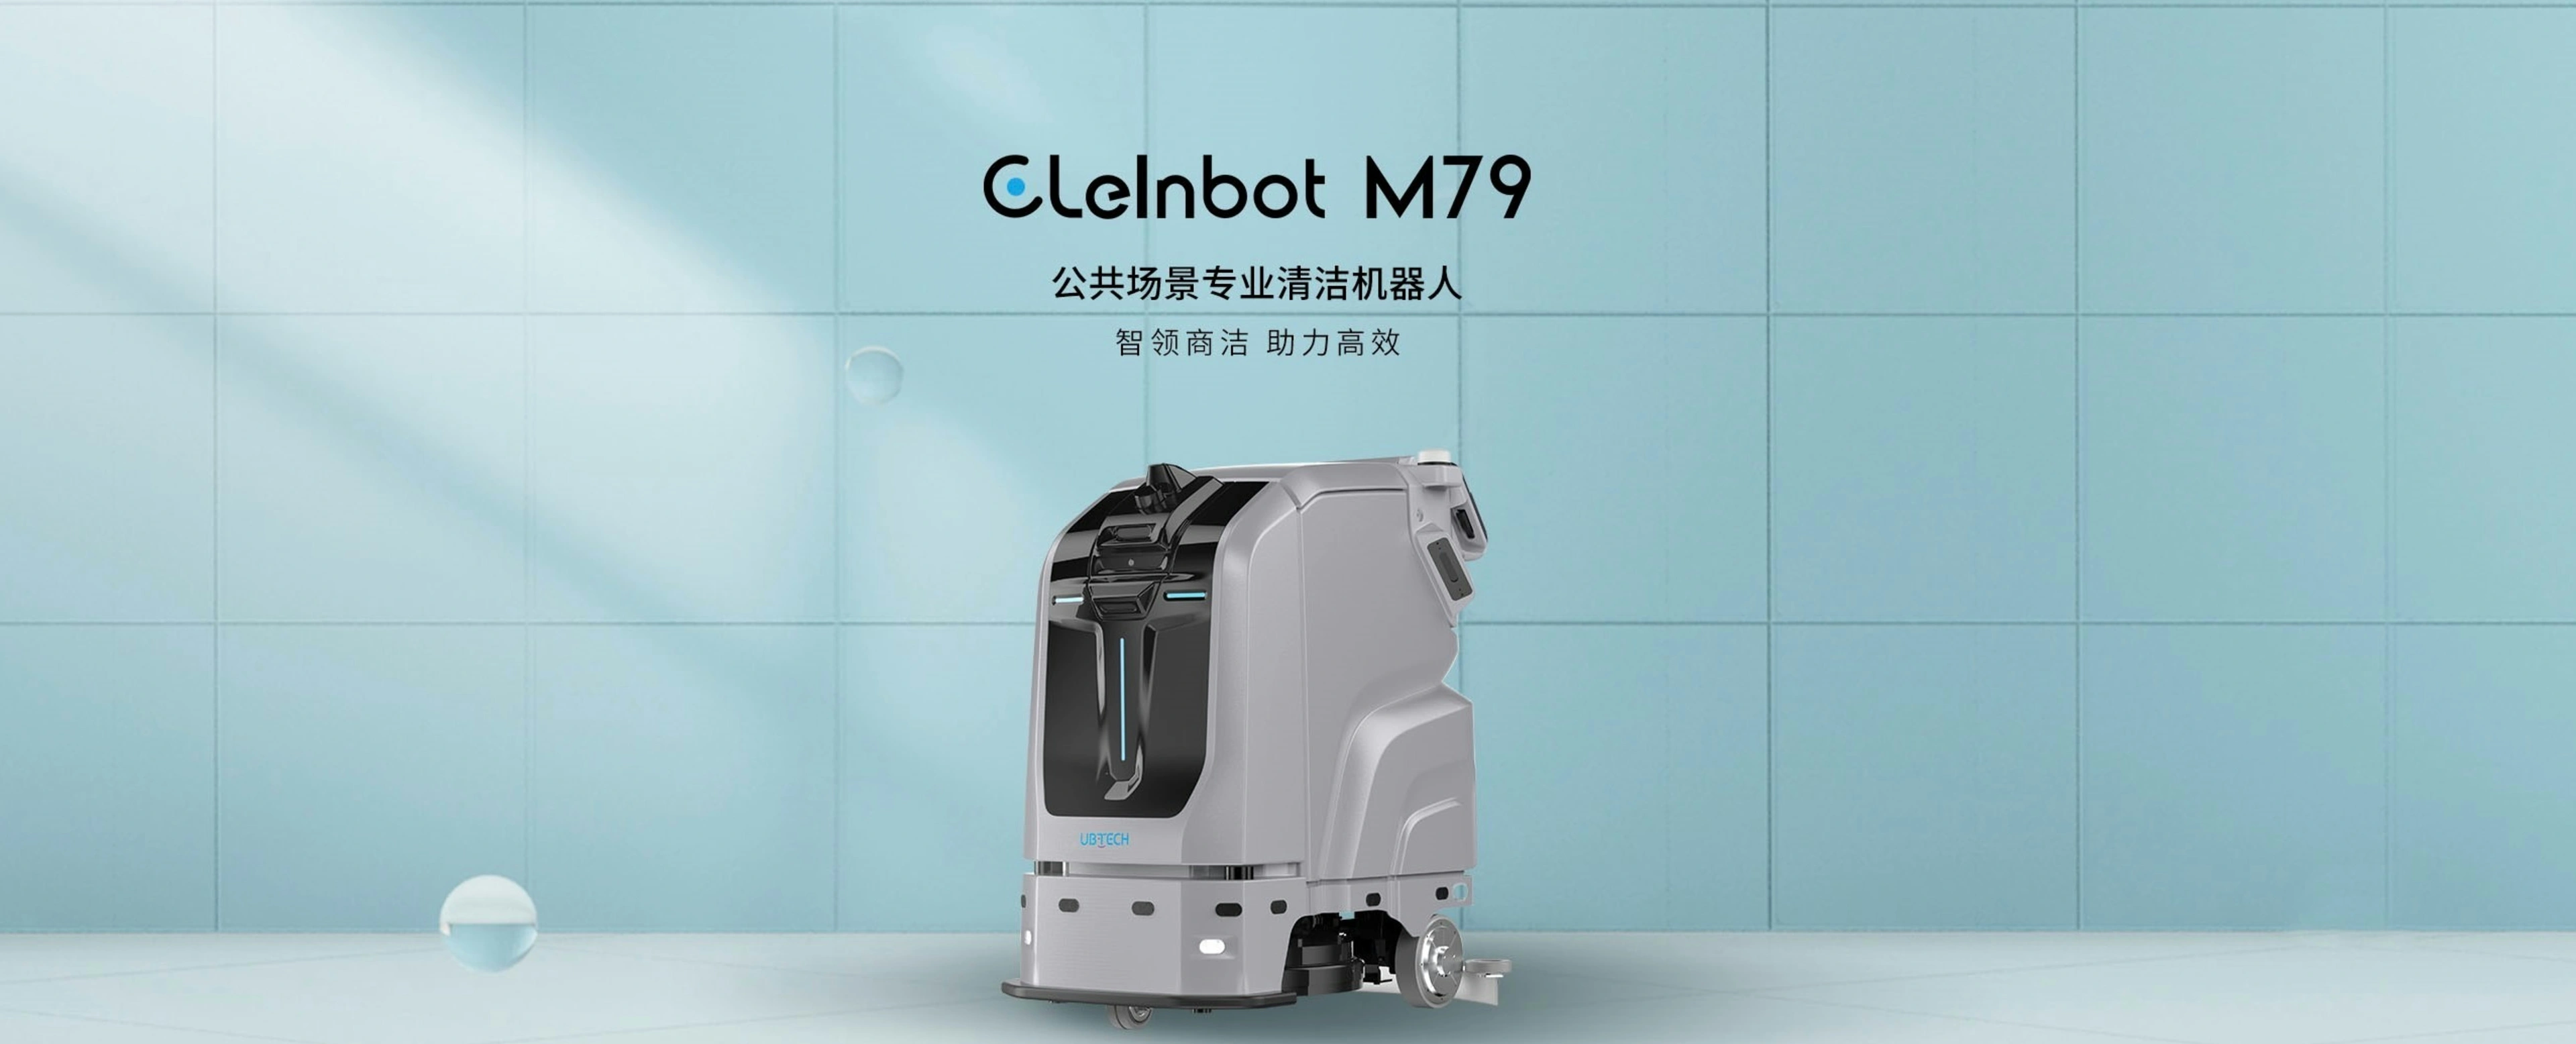 Ubtech CLEINBOT M79公共空间专业清洁机器人